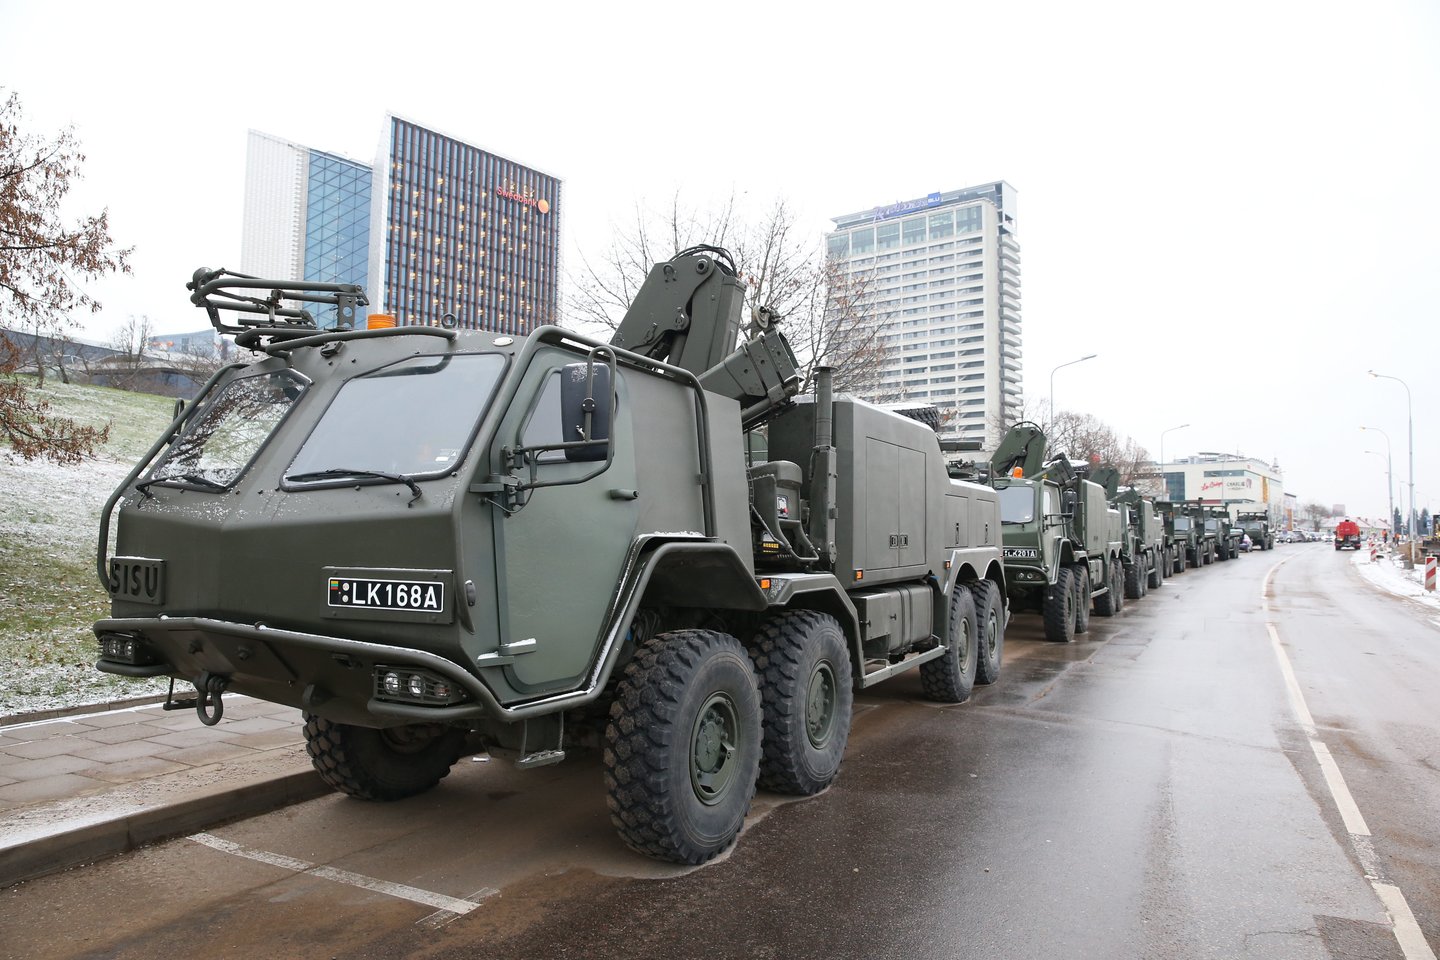  Lietuvos kariuomenės šimtmečio parade pasirodys daugiau nei 80 karinių mašinų.<br> R. Danisevičiaus nuotr.